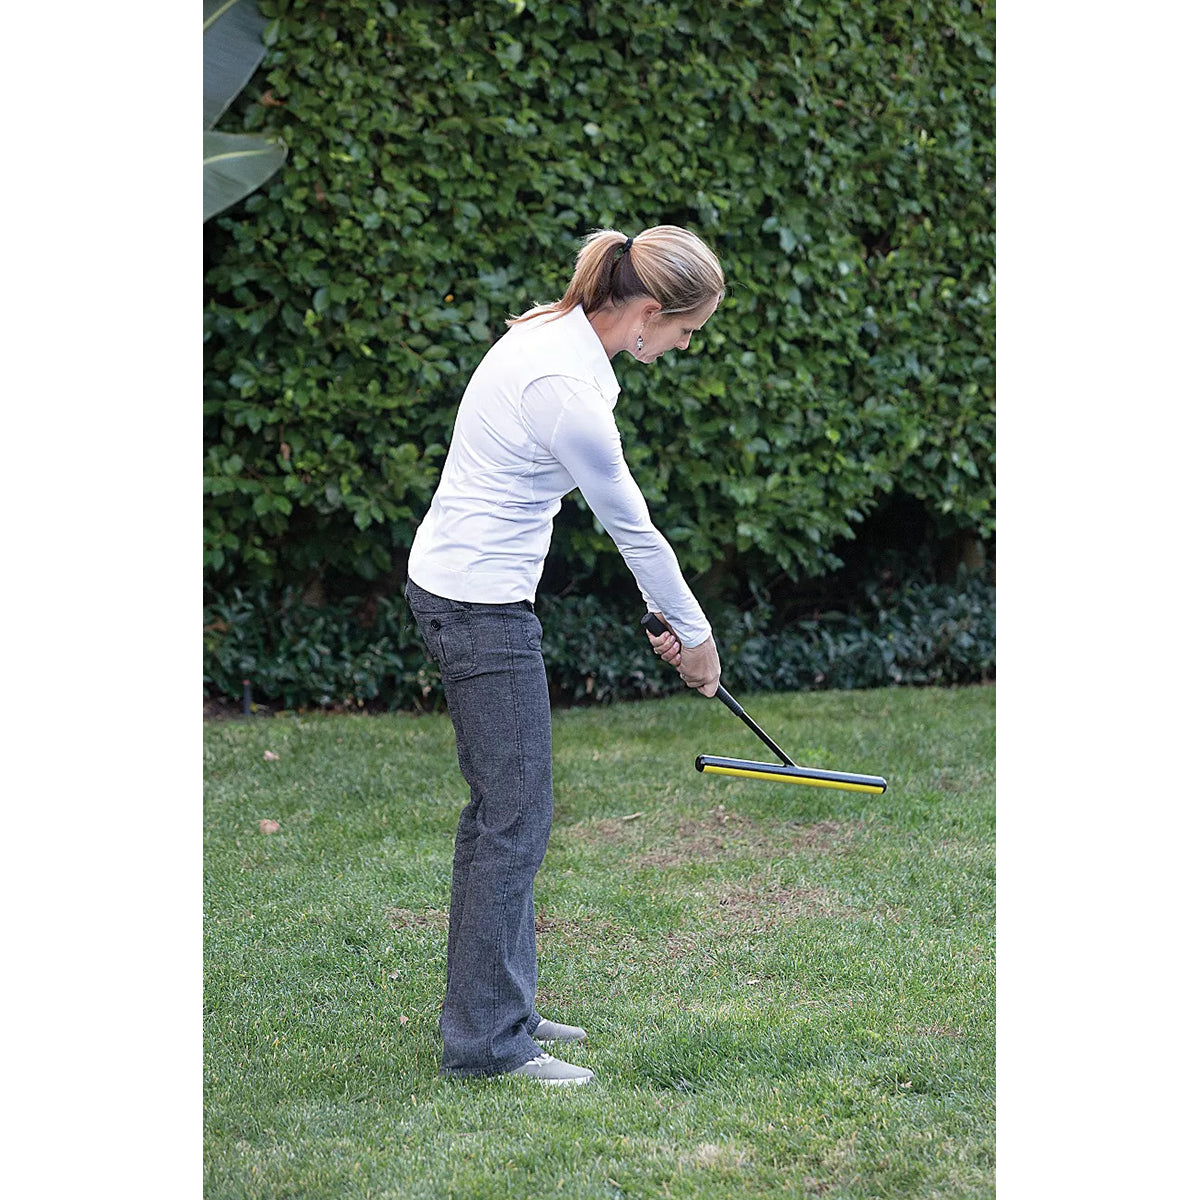 SKLZ Power Position Right-Handed Golf Swing Trainer - Black/Yellow SKLZ